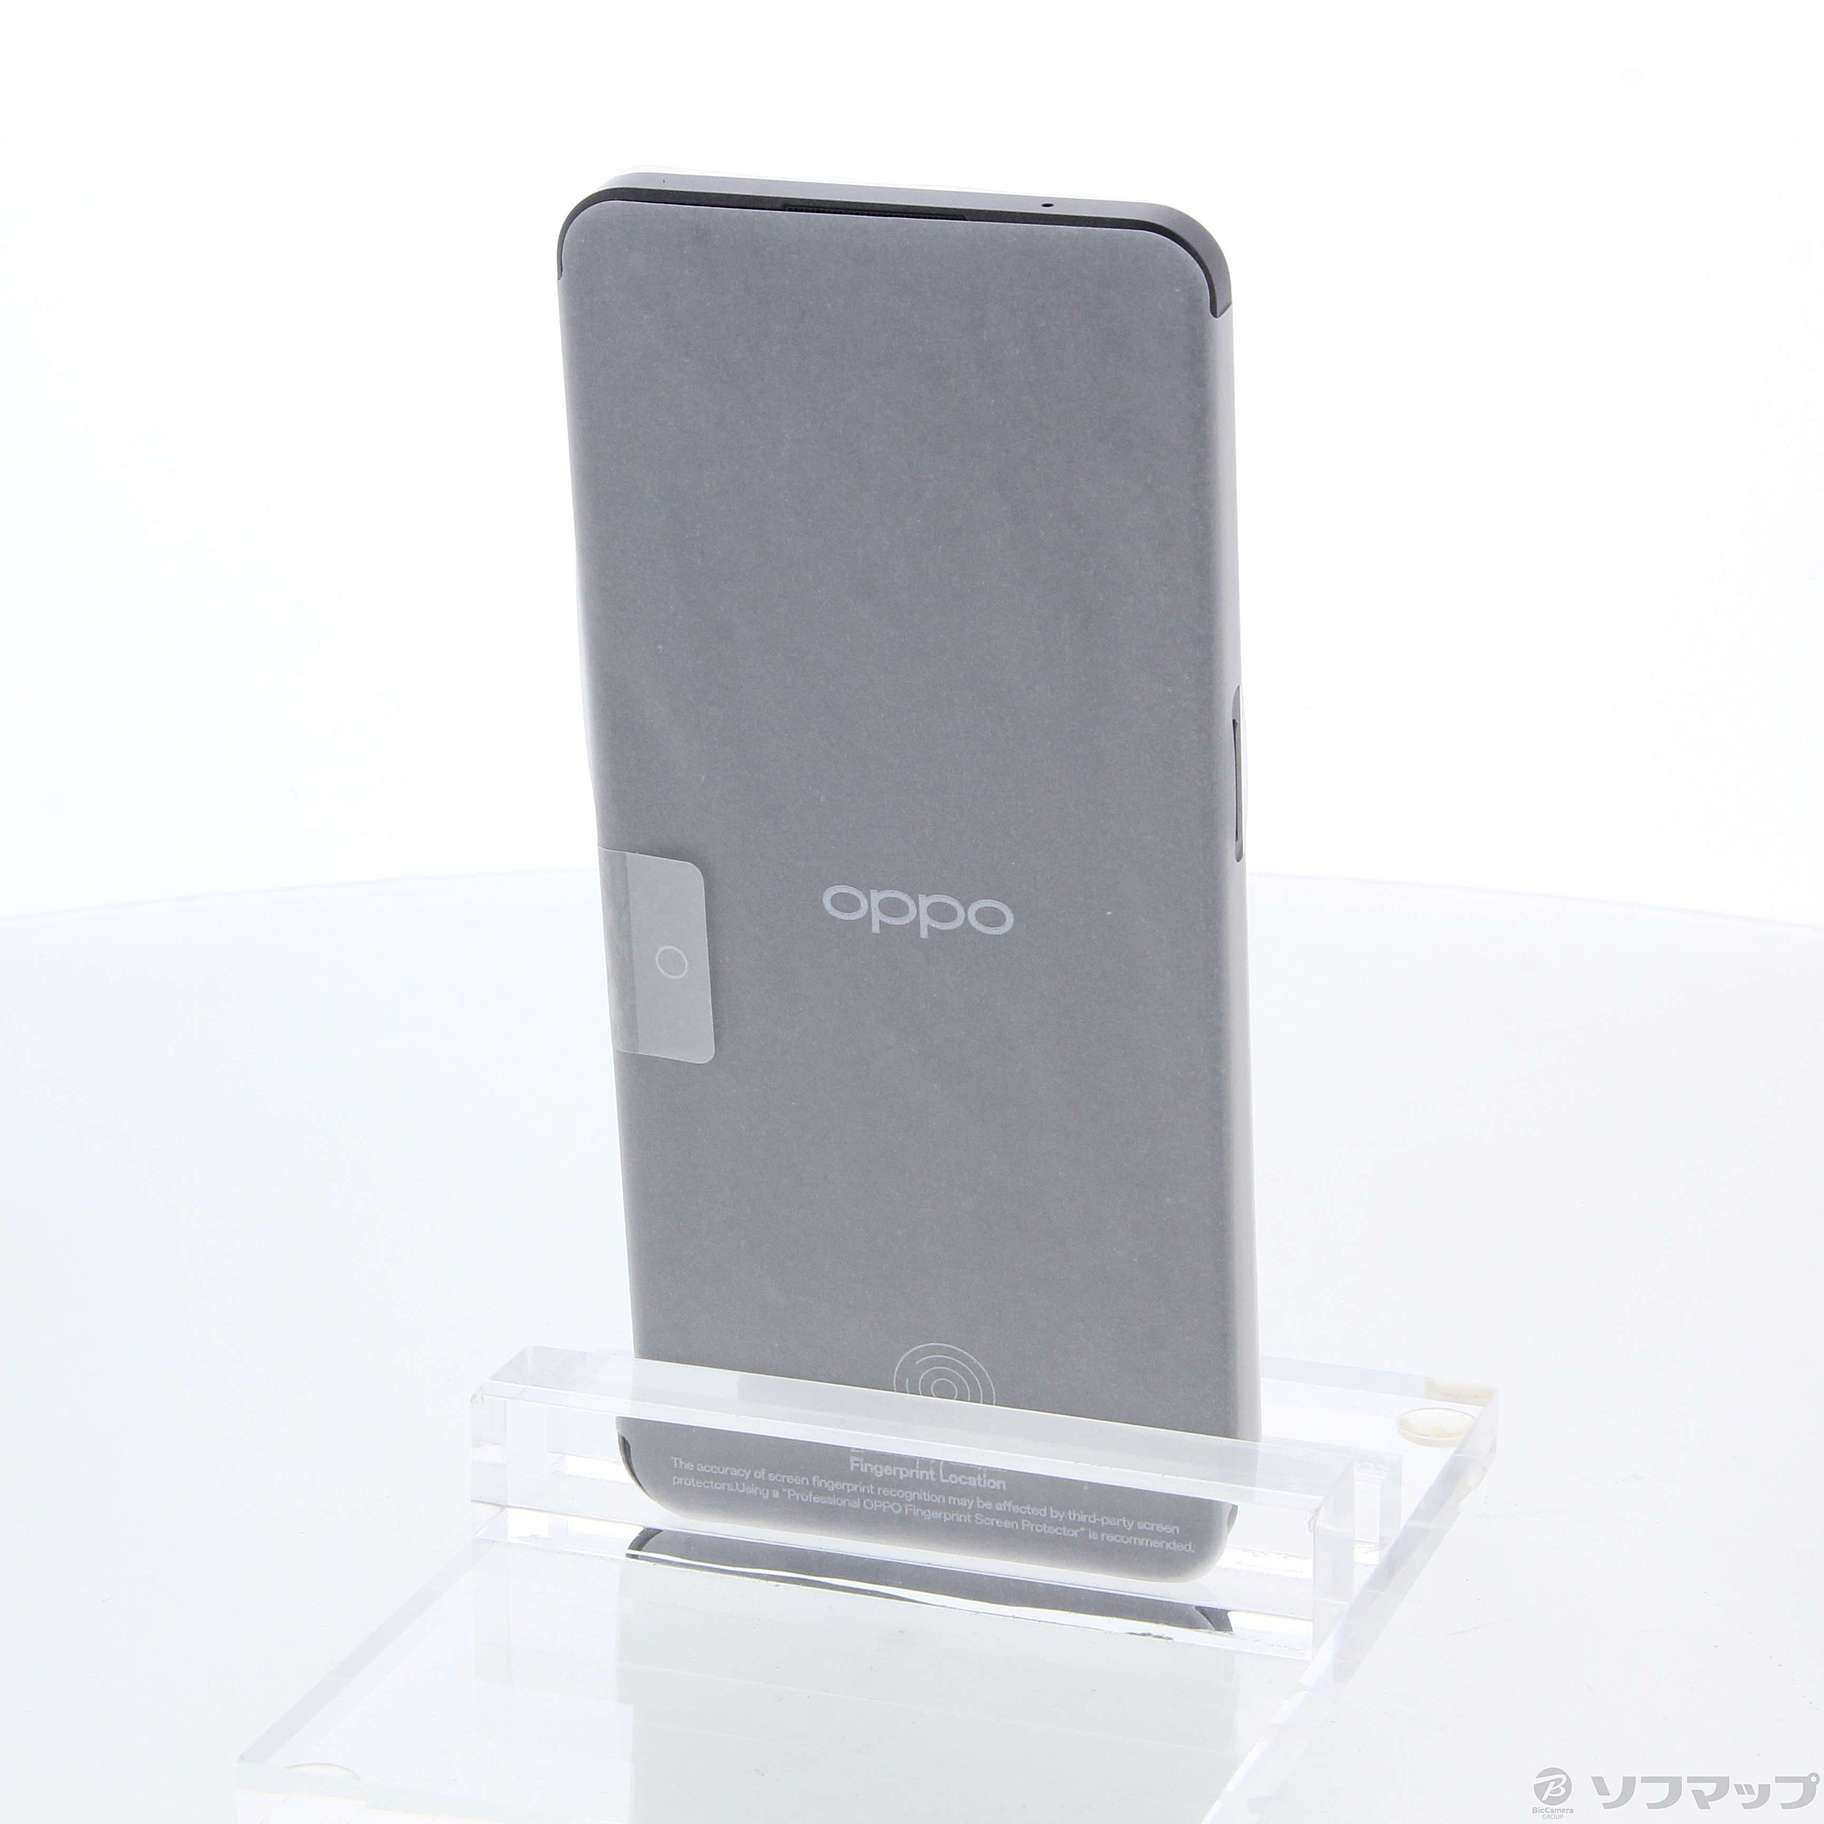 中古】OPPO Reno9 A 128GB ナイトブラック A301OP Y!mobile